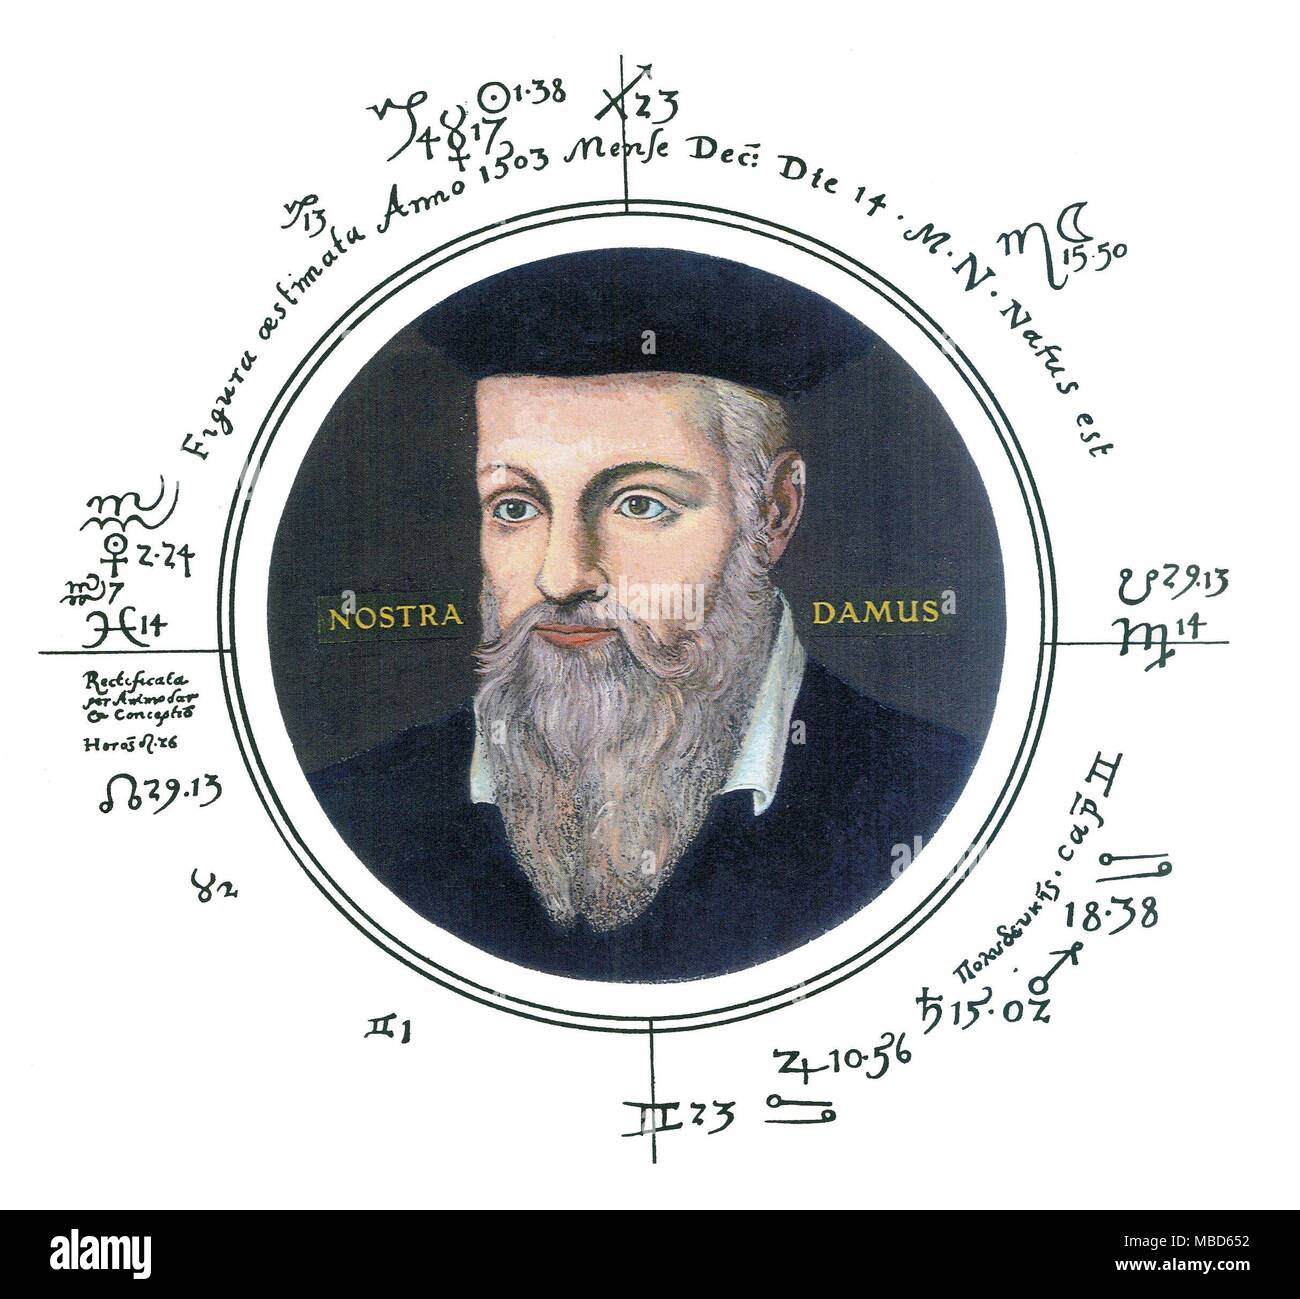 Horoskope - NOSTRADAMUS Nostradamus war in St-Rémy, Provence geboren, um 12:14:20 Uhr, lokale Zeit, am 14. Dezember 1503. Diese Daten werden von der sorgfältigen Studie des Horoskops von Nostradamus abgeleitet, in der David Ovason, die Geheimnisse des Nostradamus. Eine radikal neue Interpretation des Master- Prophezeiungen, 2001, S. 377-391. Das Porträt in der vorliegenden Tabelle ist eine auf das Bild von César, der Sohn von Nostradamus, die jetzt in der Bibliothèque de la Mesjanes gemalt, Aix-en-Provence. Die sigillization, Berichtigung Methode und Darstellung der stellaren Einflüsse, innerhalb dieses Diagramm, ein Stockfoto